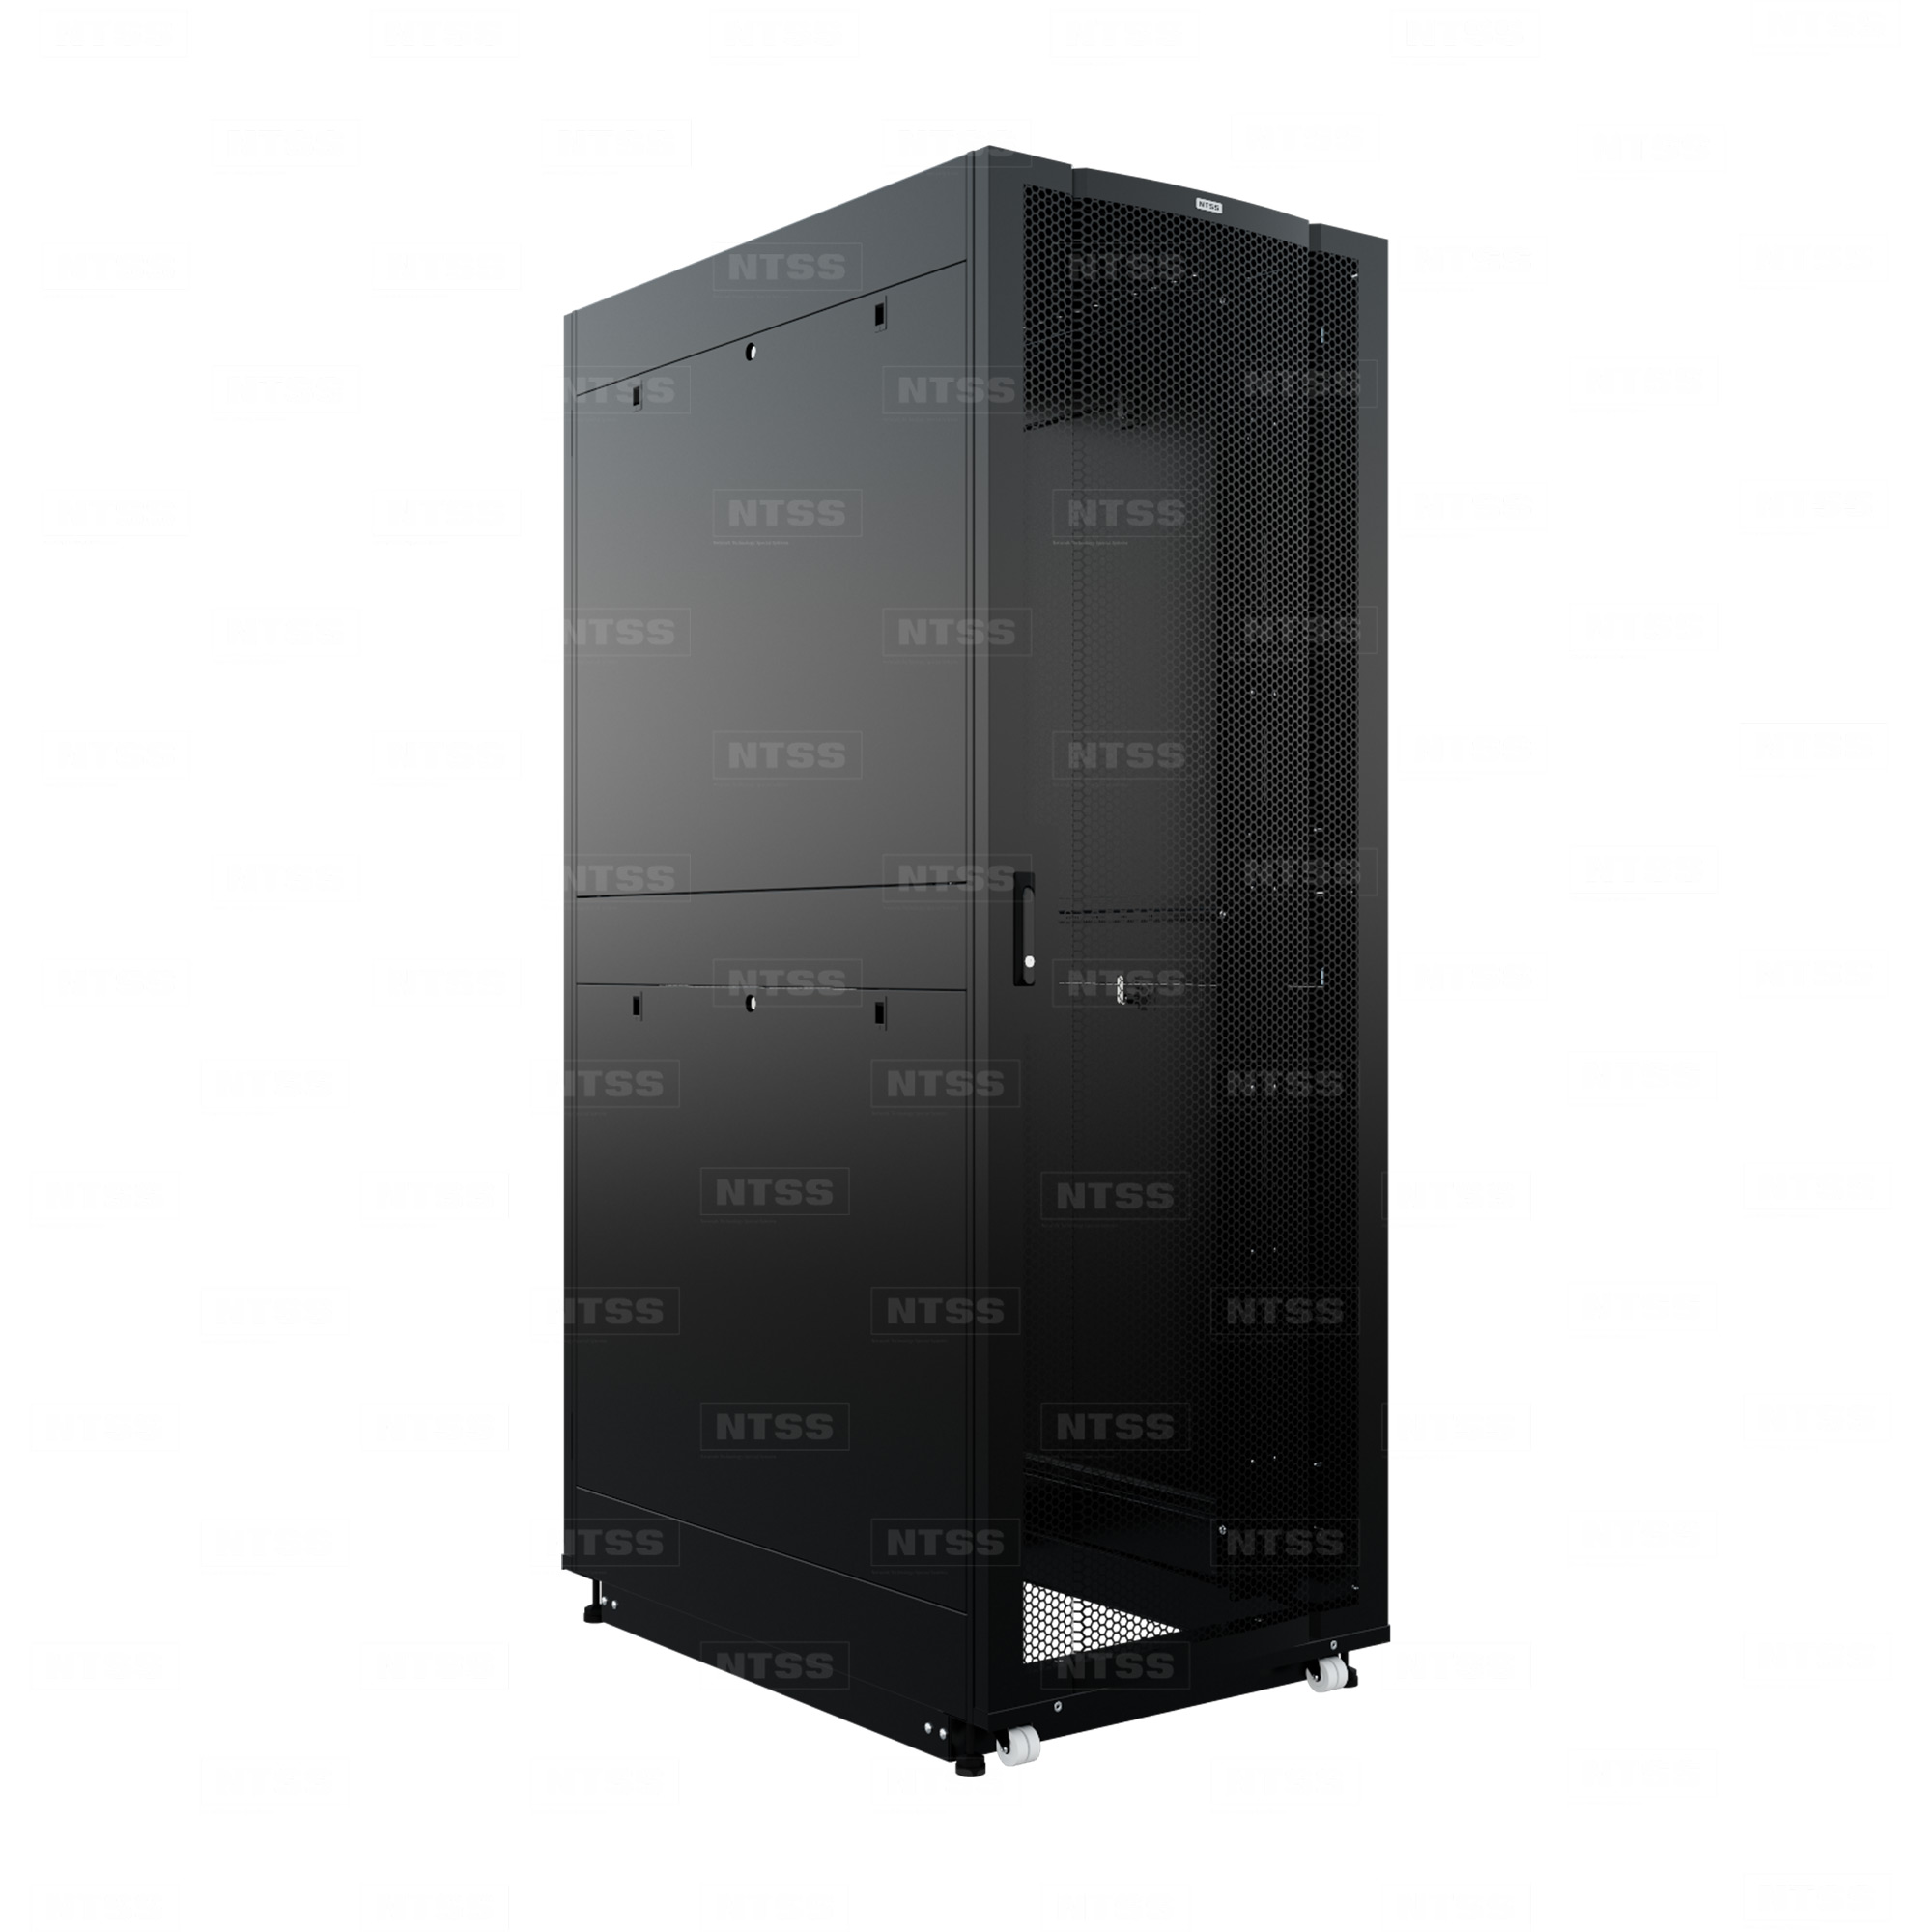 19" Напольный серверный шкаф NTSS ПРОЦОД PC МАСТЕР 45U 800х1200 мм, сварной в сборе, передняя дверь перфорация, задняя дверь распашная двойная перфорированная, боковые стенки, регулируемые опоры, ролики, черный RAL 9005